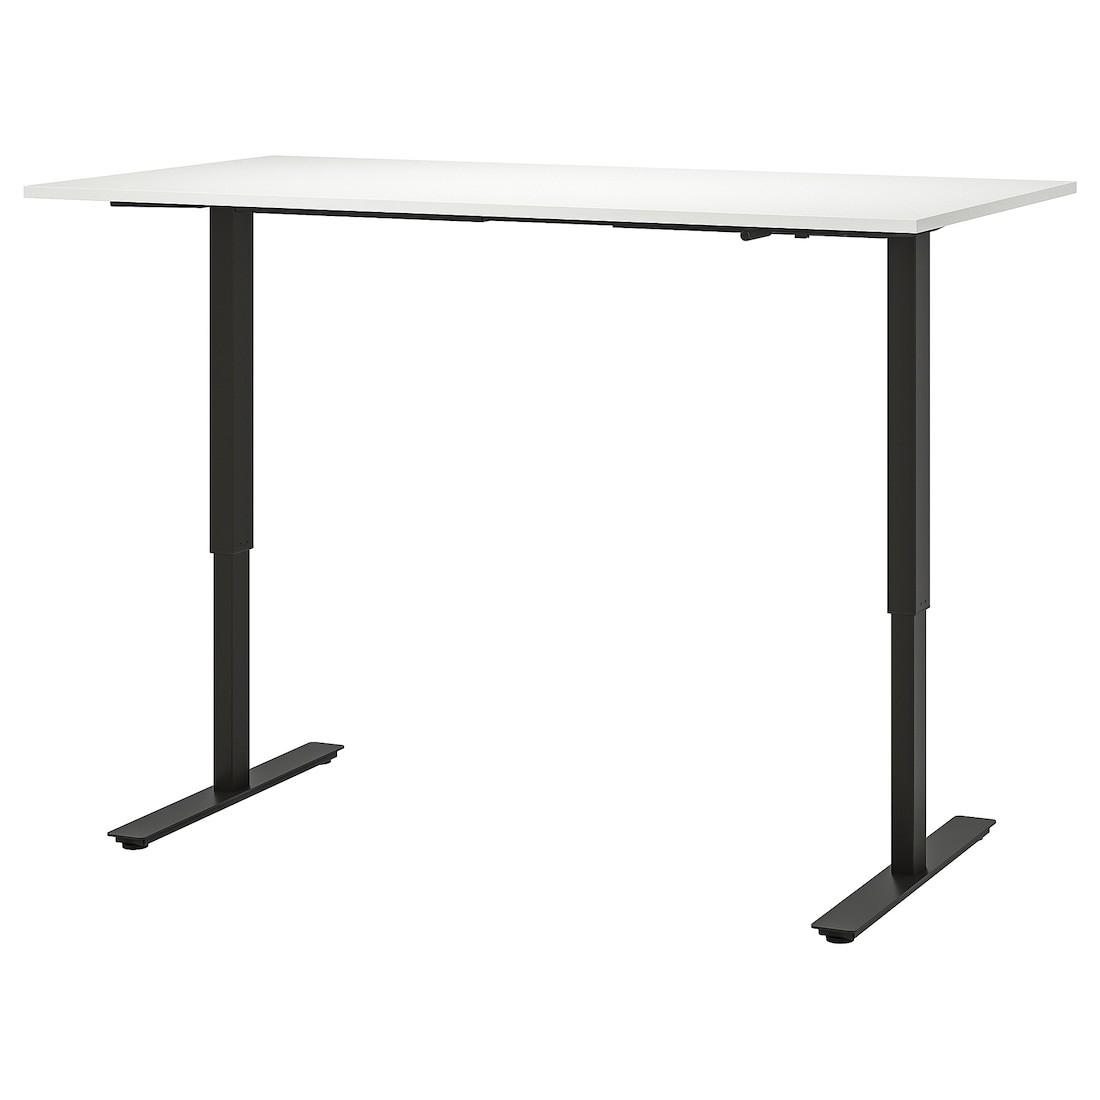 IKEA TROTTEN ТРОТТЕН Письменный стол с регулировкой высоты, белый / антрацит, 160x80 см 59429599 594.295.99